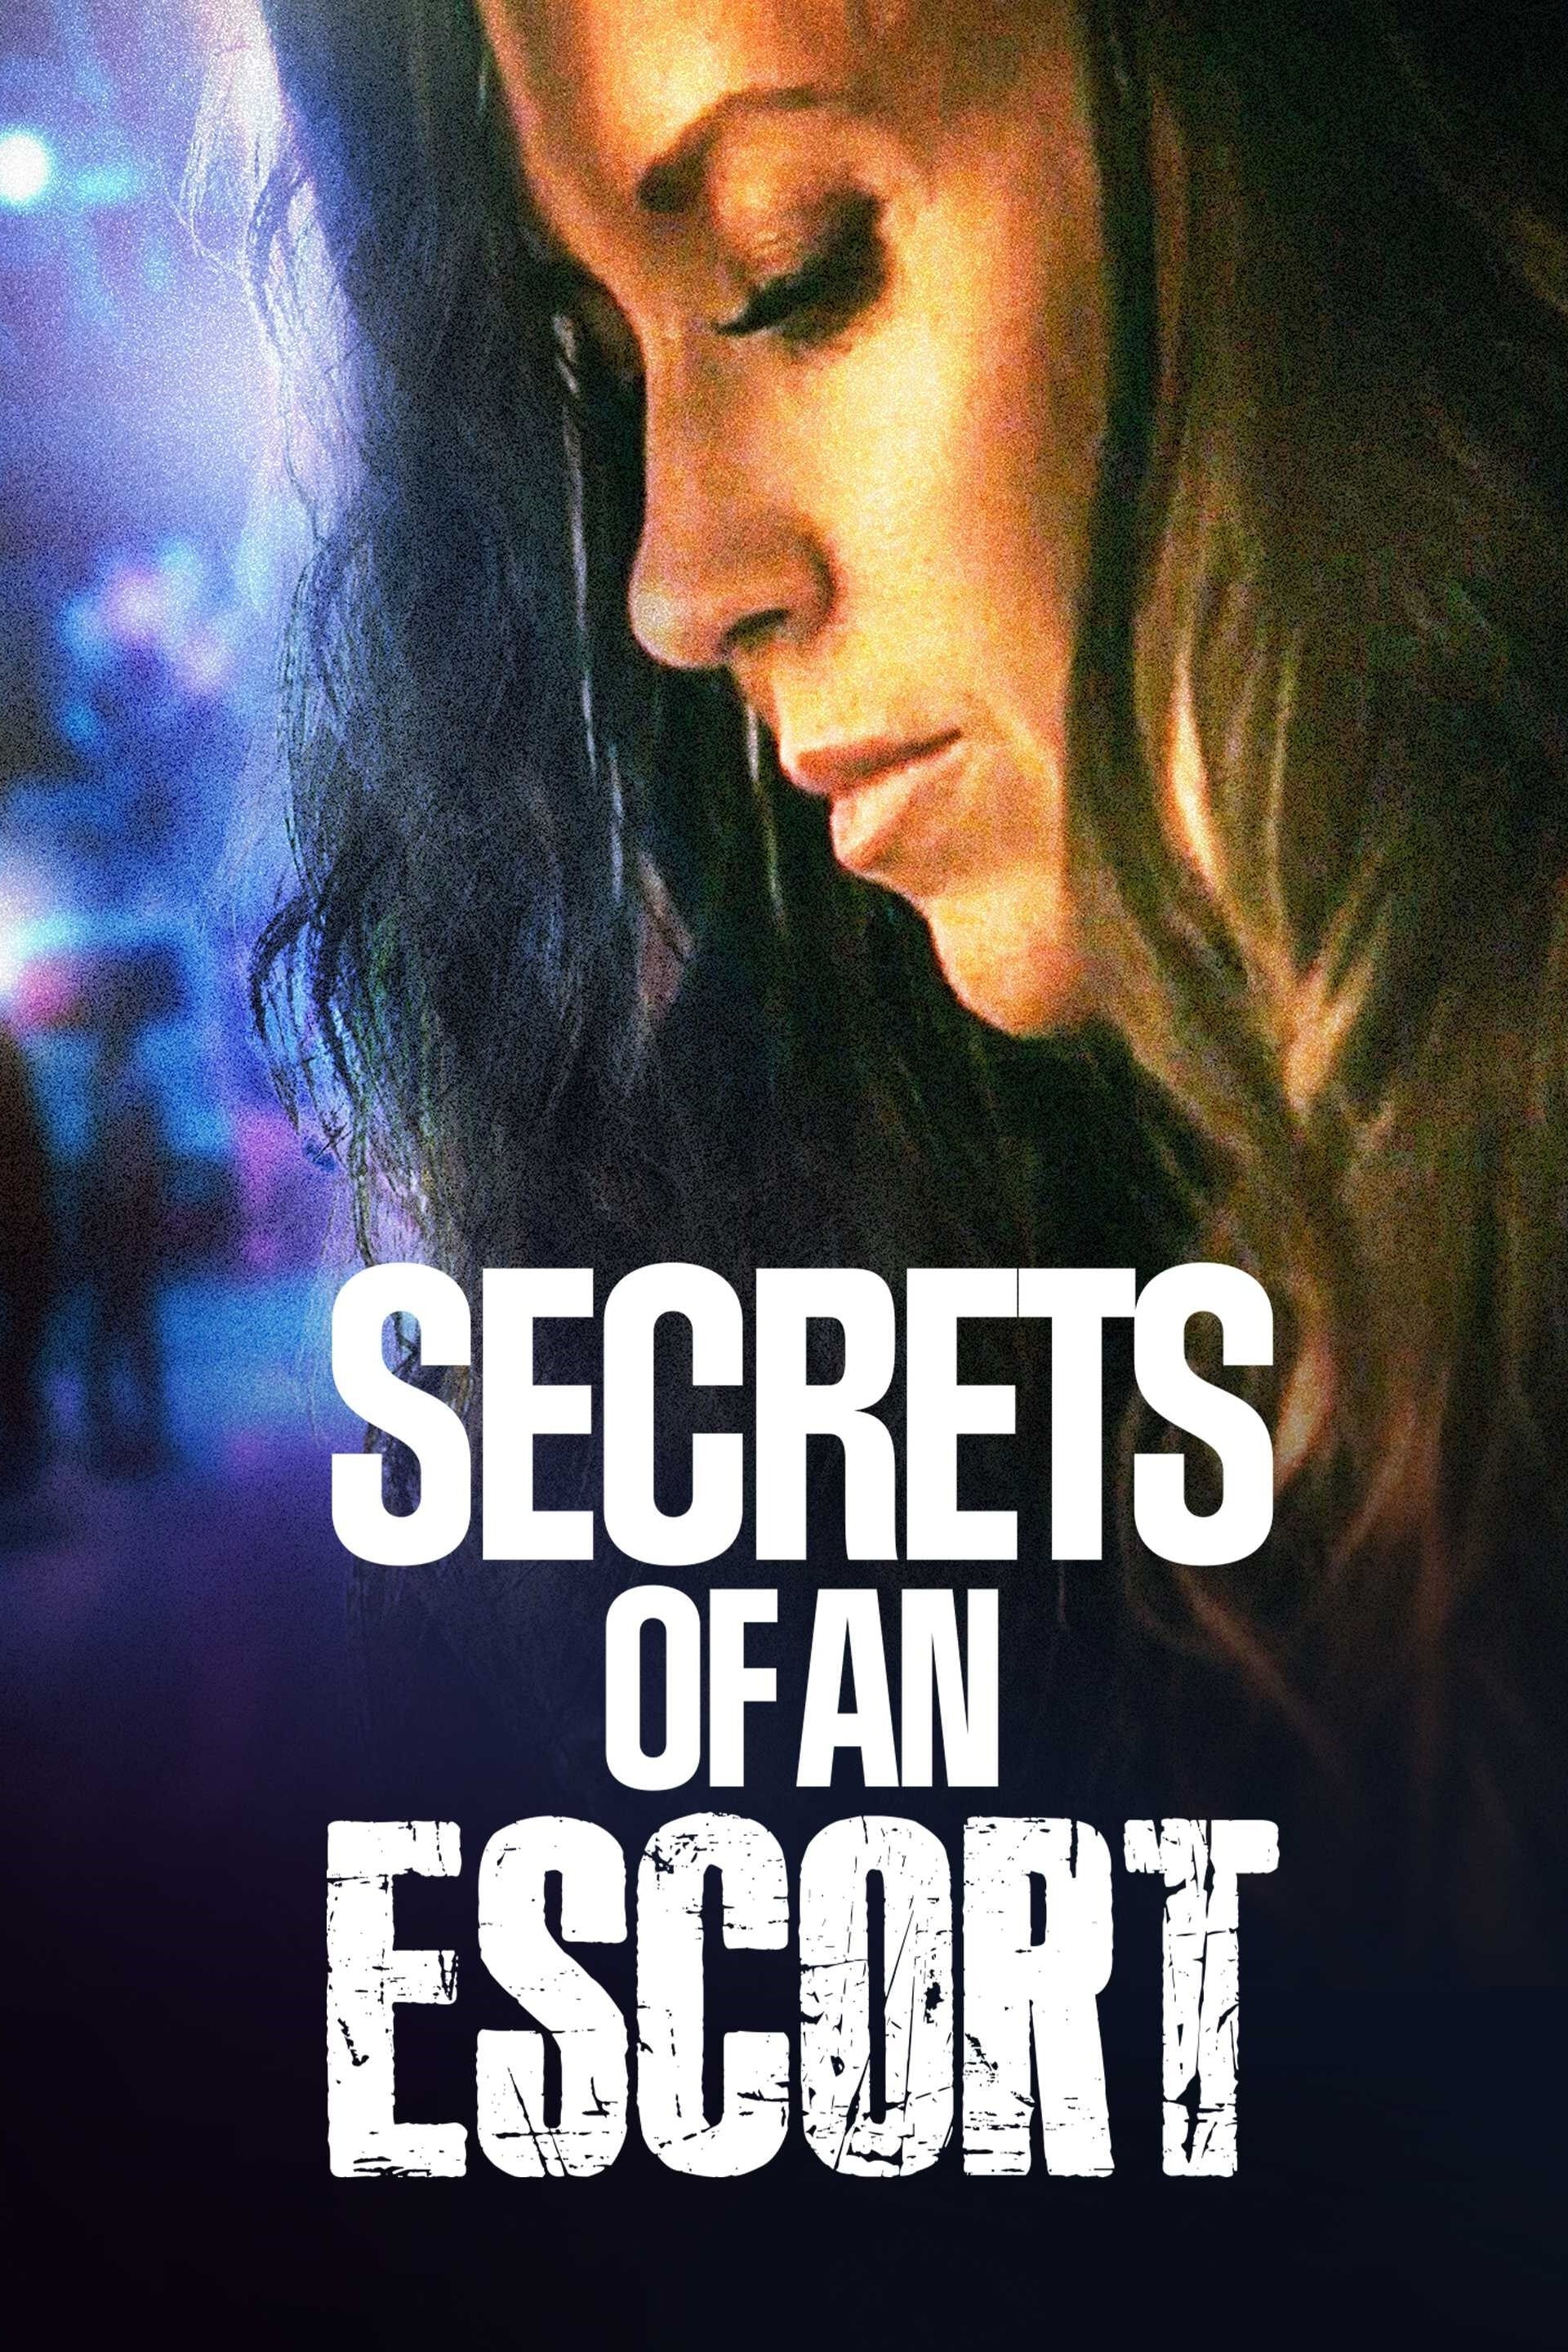 Secrets of an Escort (2021) poster - Allmovieland.com